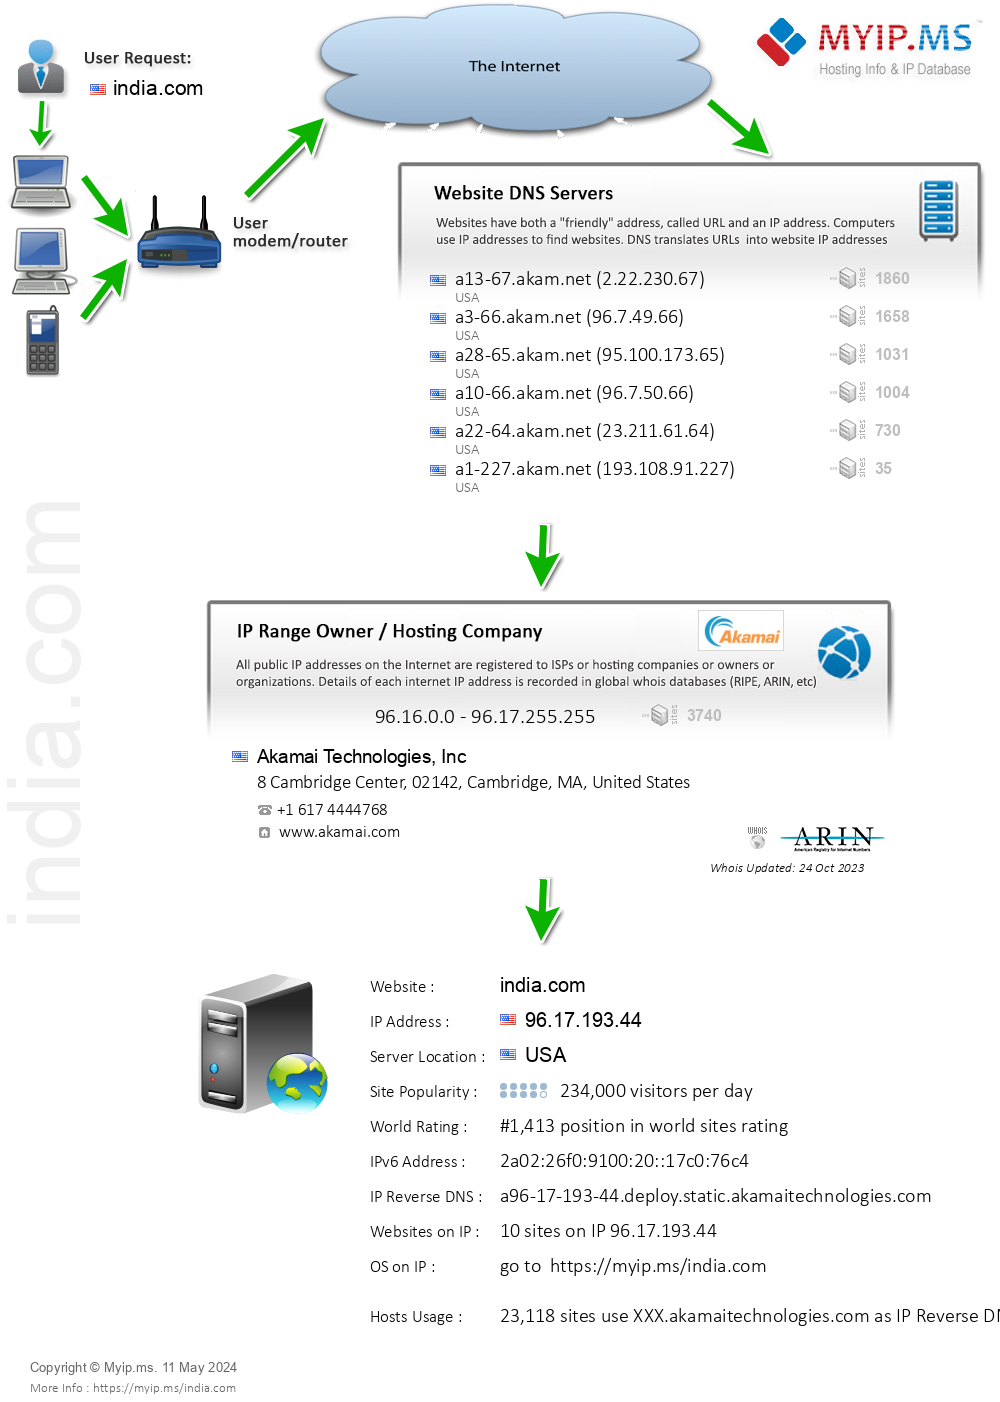 India.com - Website Hosting Visual IP Diagram